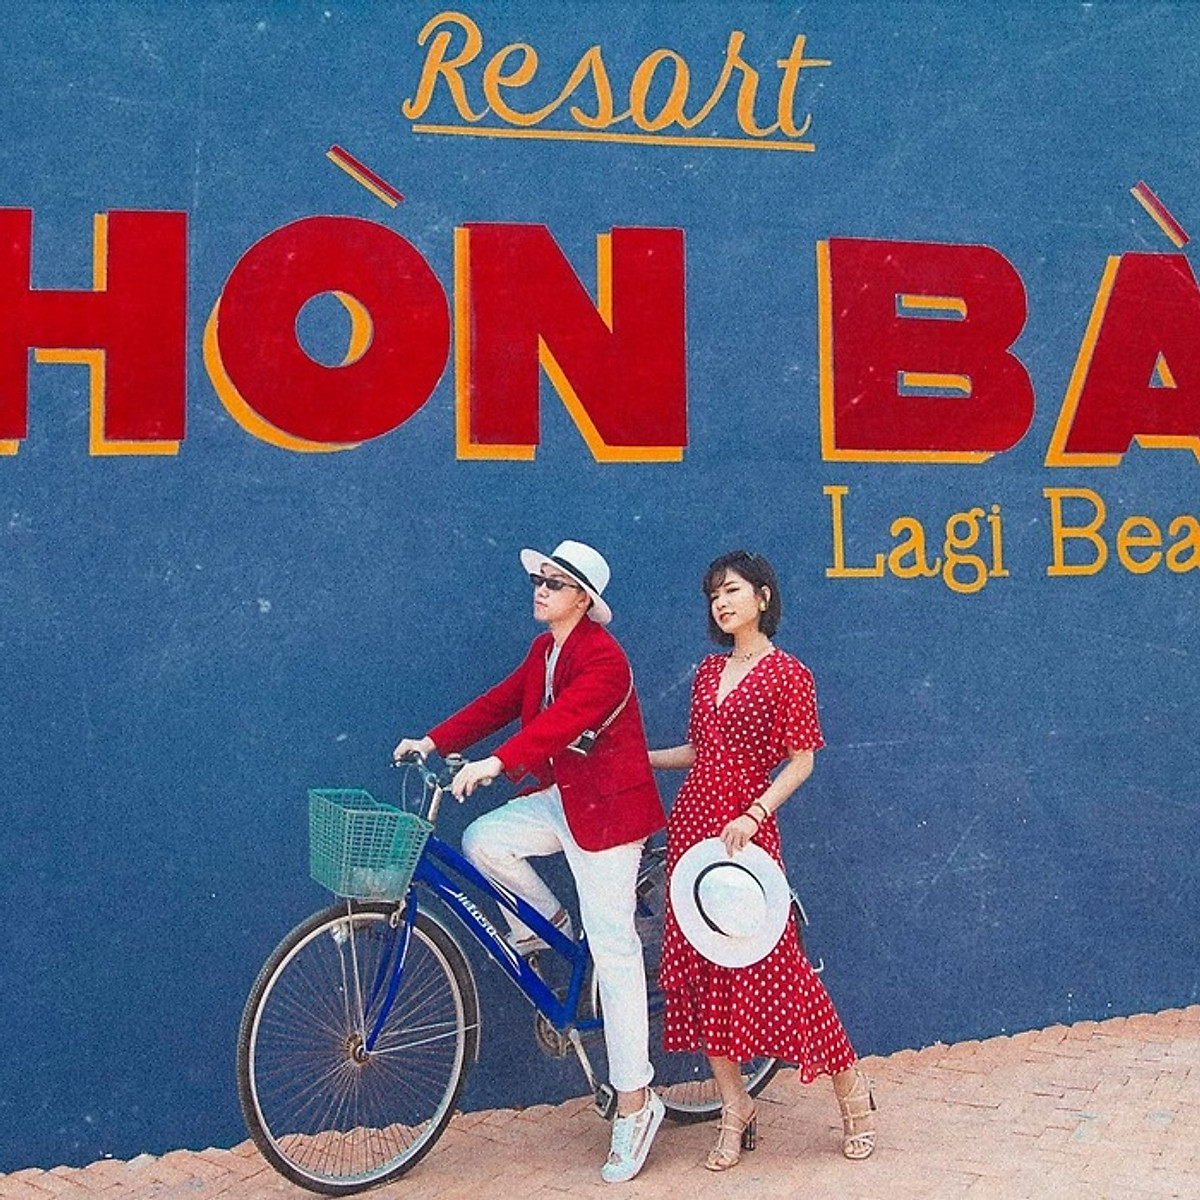 Hòn Bà Lagi Beach Resort 3* - Bữa Sáng, Hồ Bơi Muối Khoáng, Bãi Biển Riêng, Trung Tâm Du Lịch Lagi Và Nhiều Ưu Đãi Hấp Dẫn